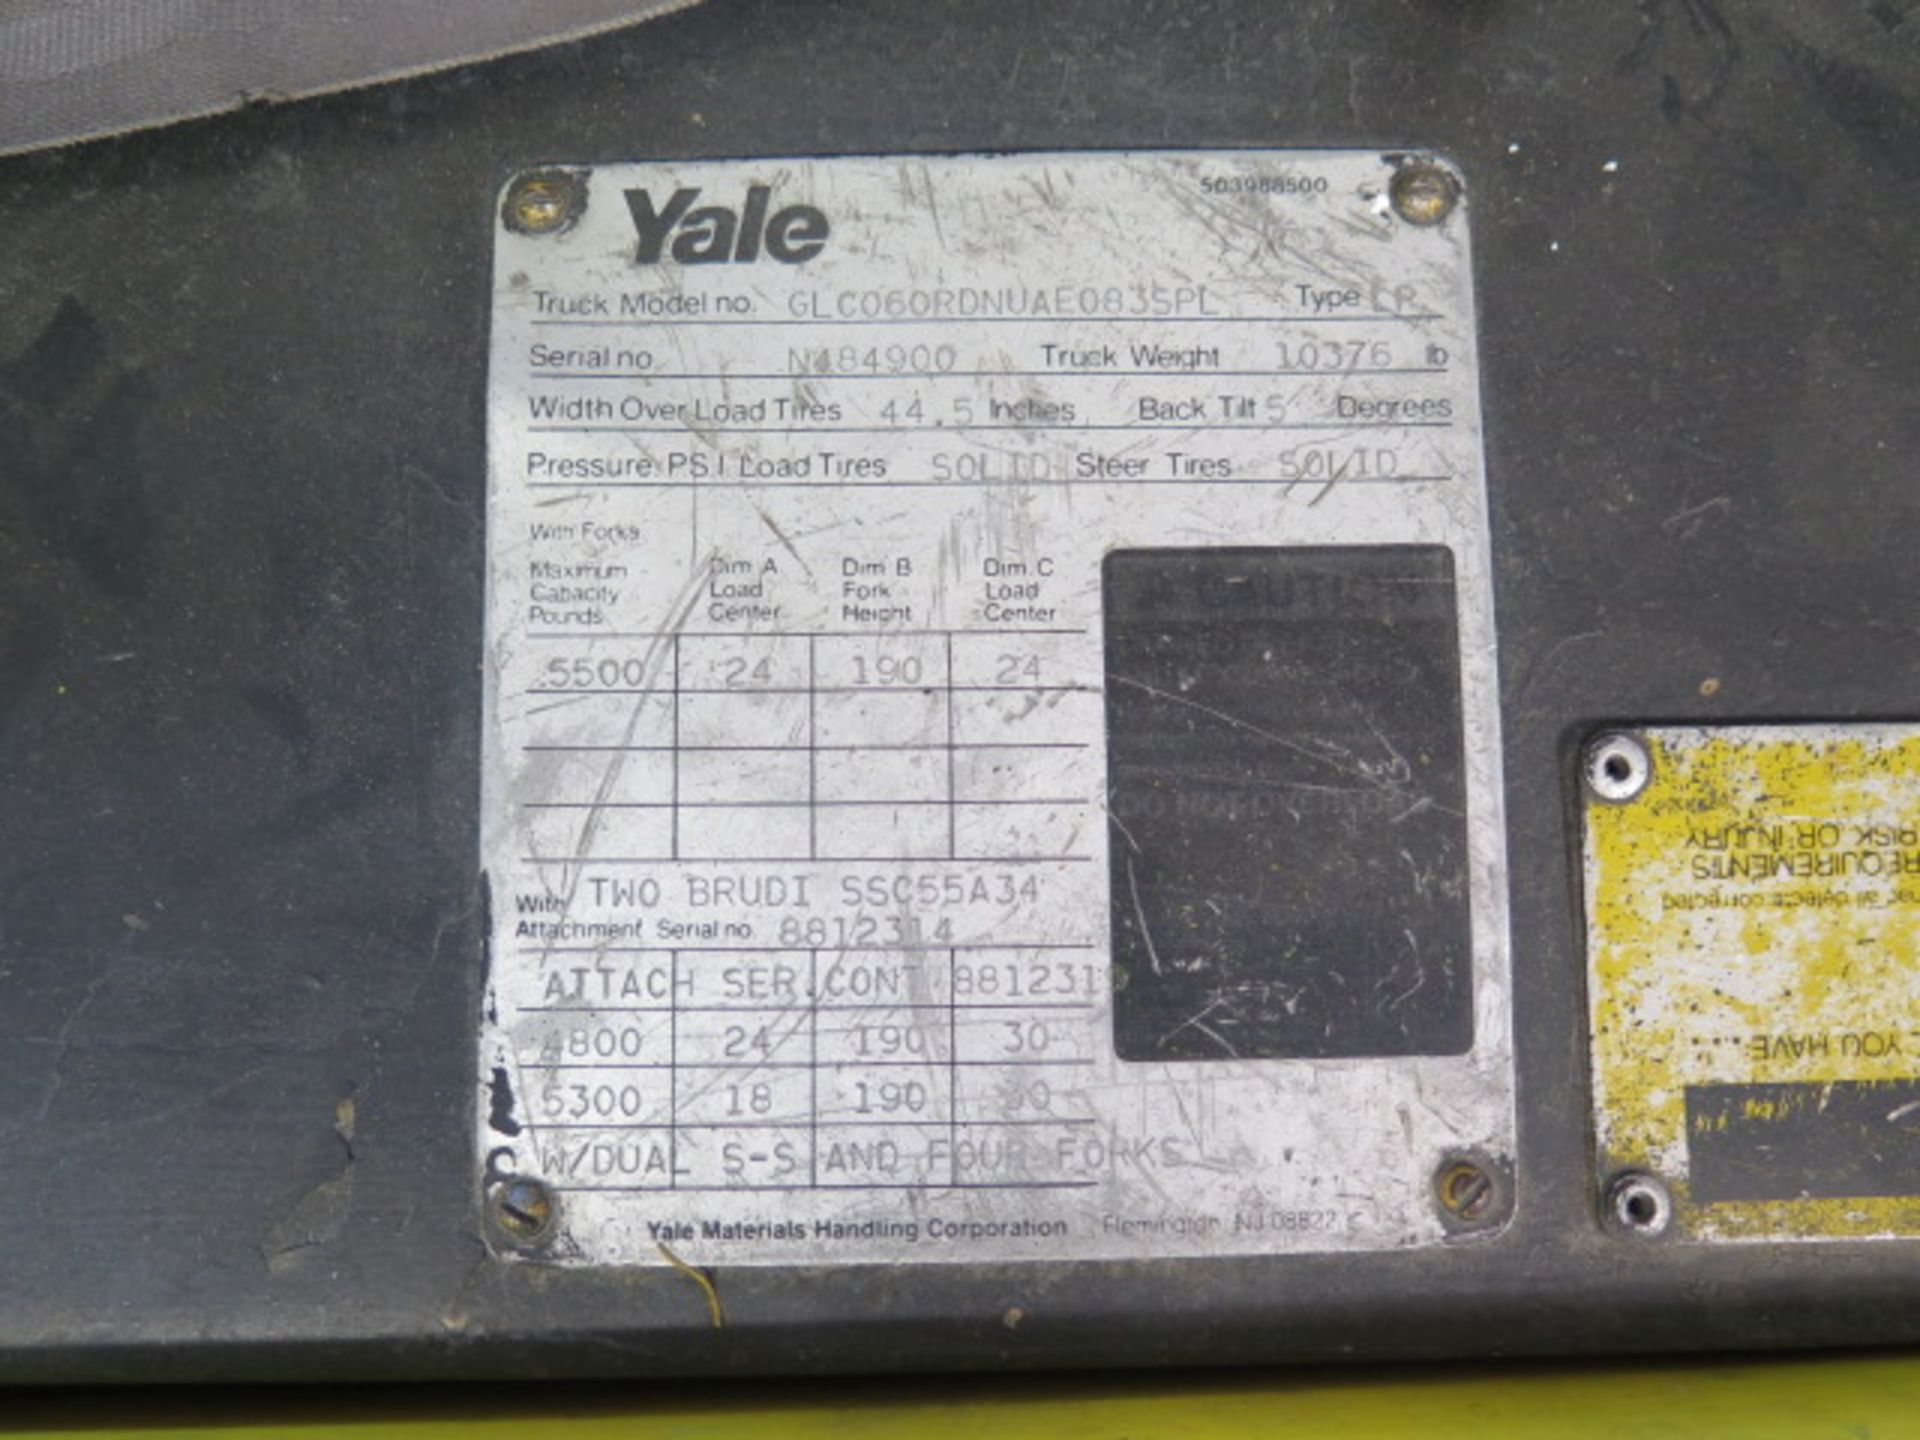 Yale GLC060RDNUAE083SPL 5500 Lb Cap LPG Forklift s/n N484900 w/ 3-Stage Mast, 190” Lift SOLD AS IS - Image 14 of 15